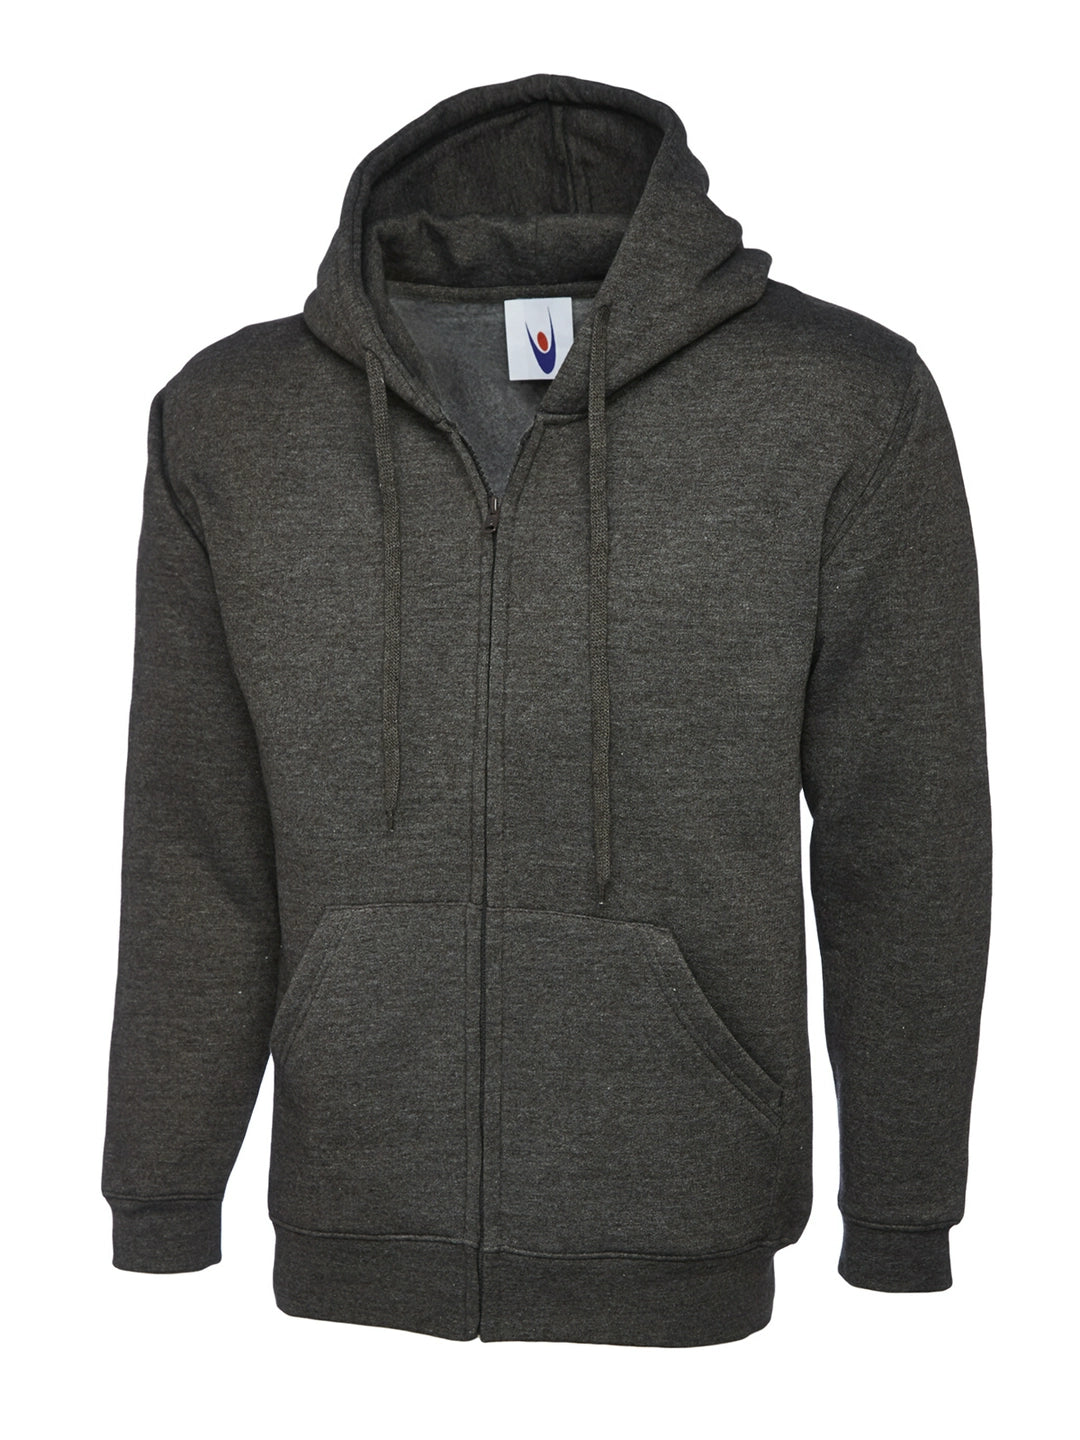 Uneek Clothing UC504 Adults Classic Full Zip Hooded Sweatshirt - COOZO